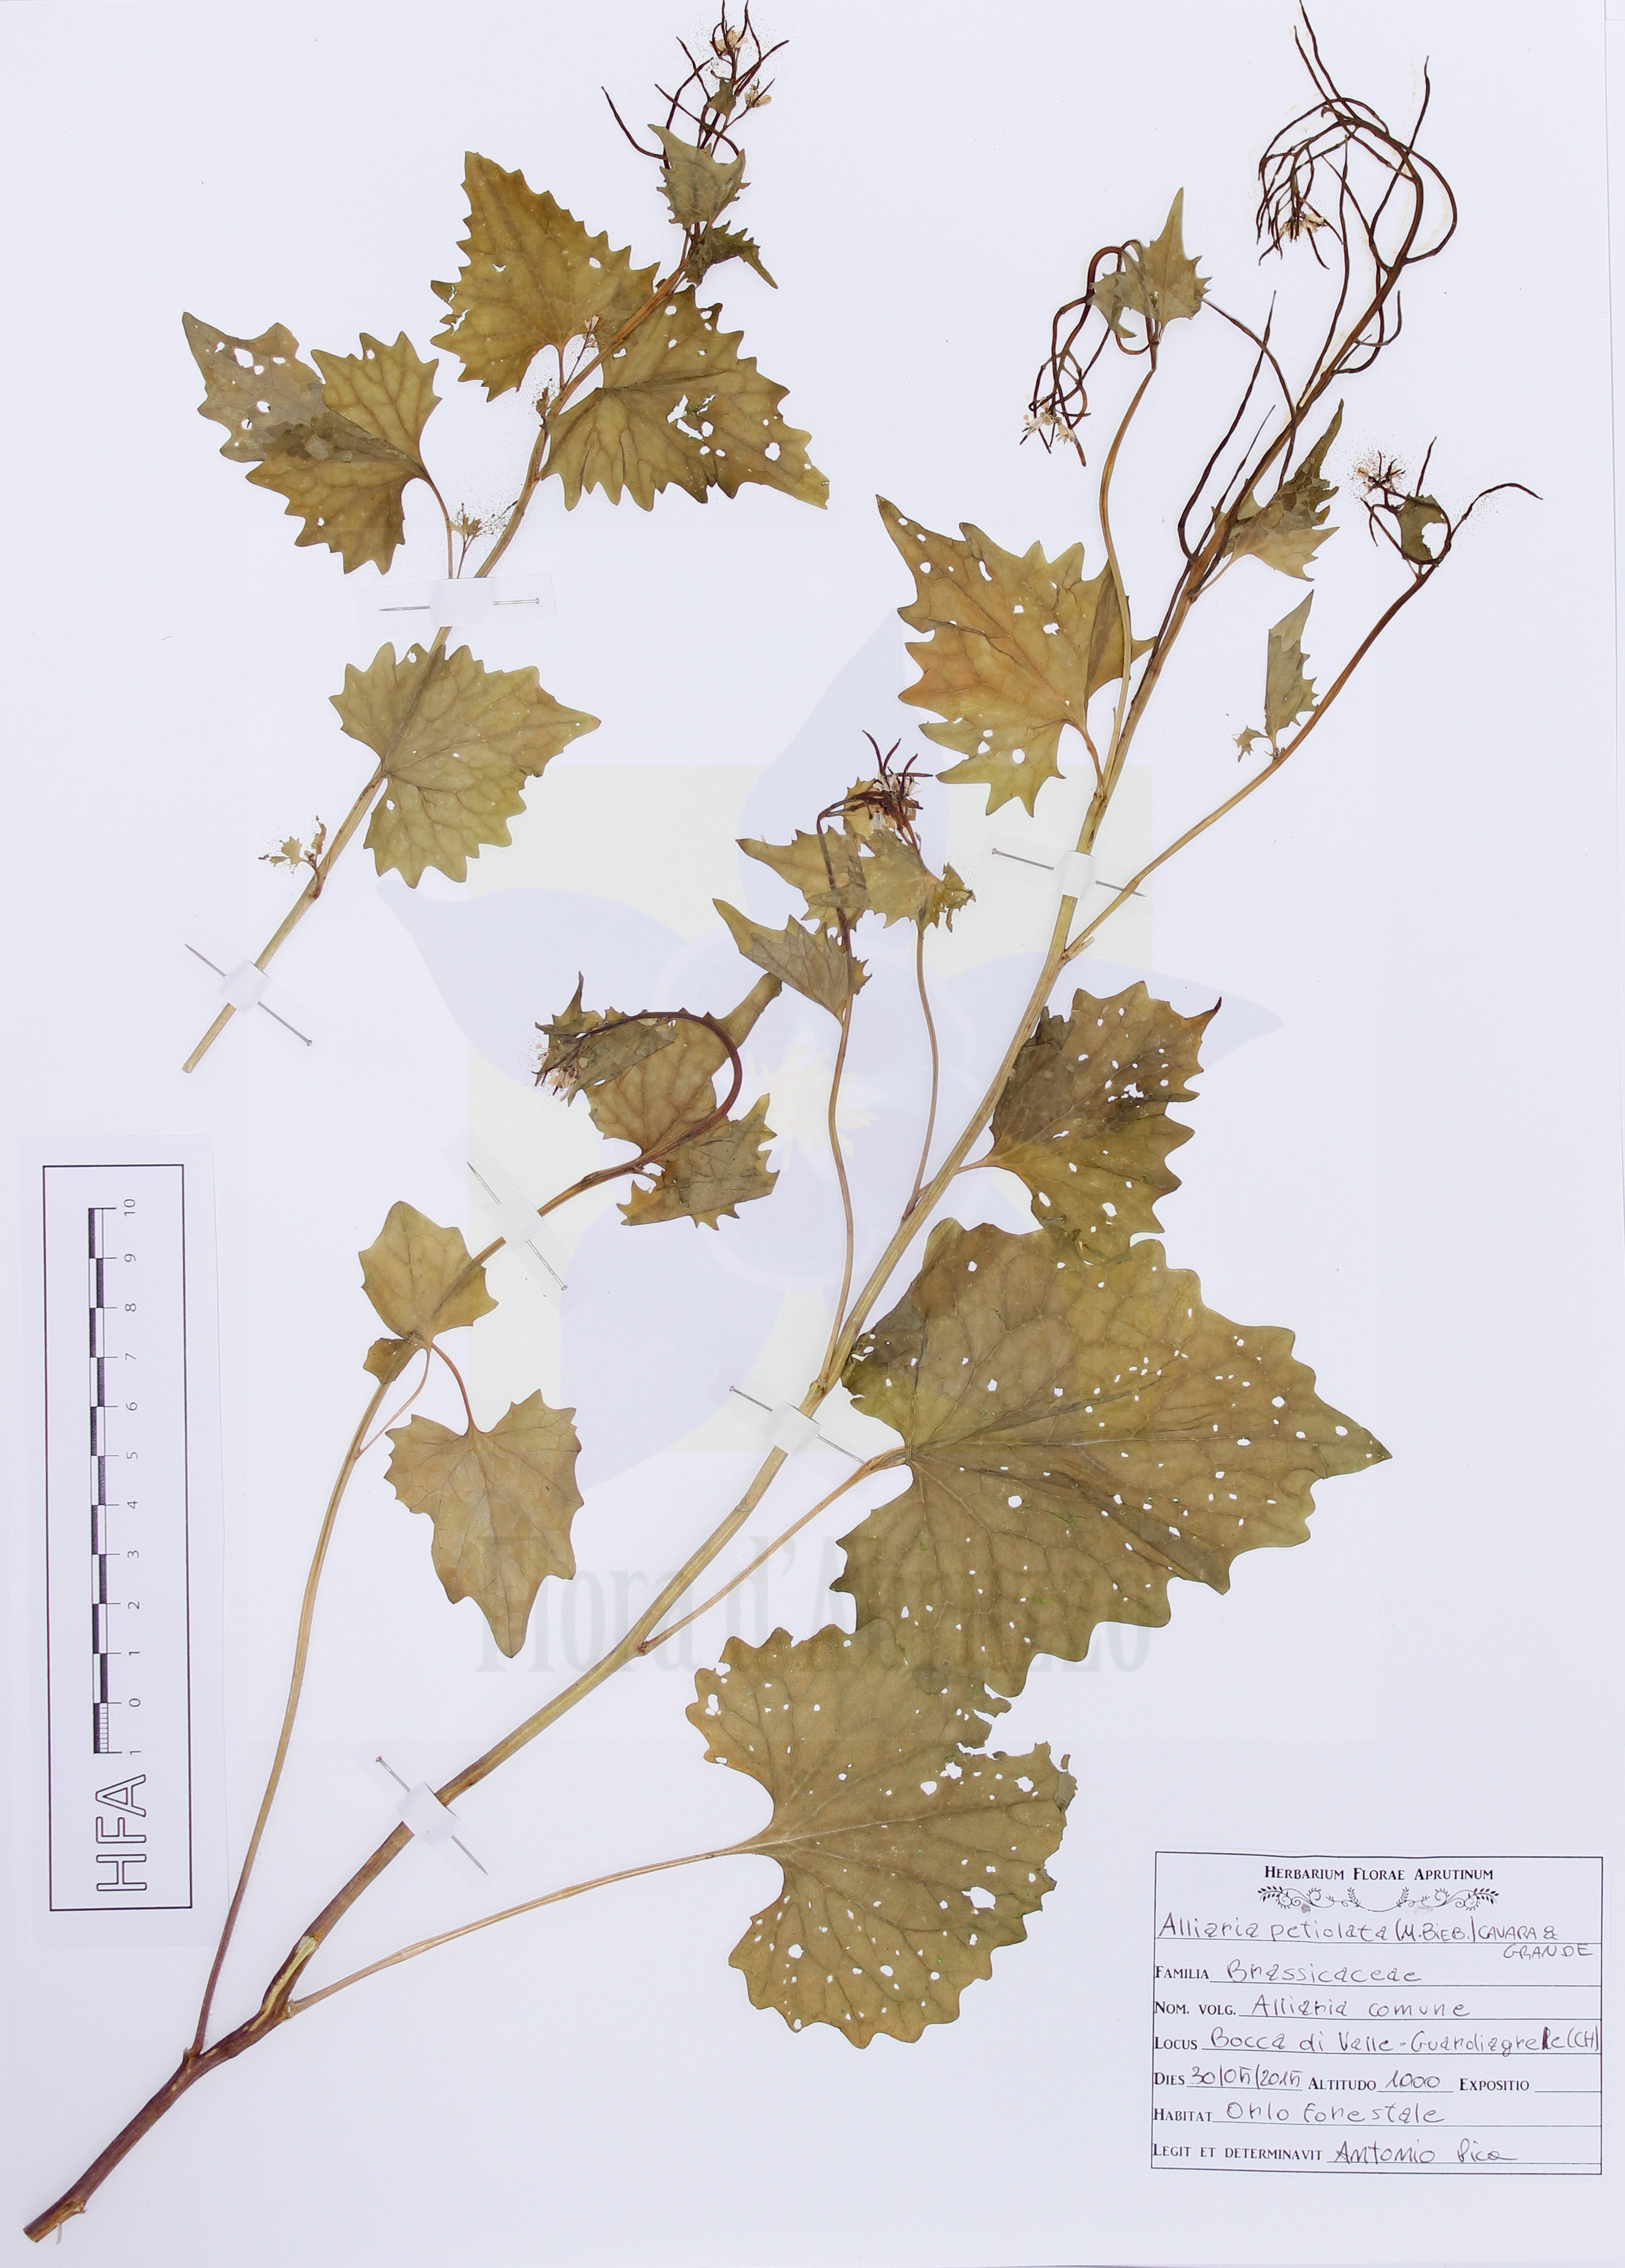 Alliaria petiolata (M. Bieb.) Cavara & Grande